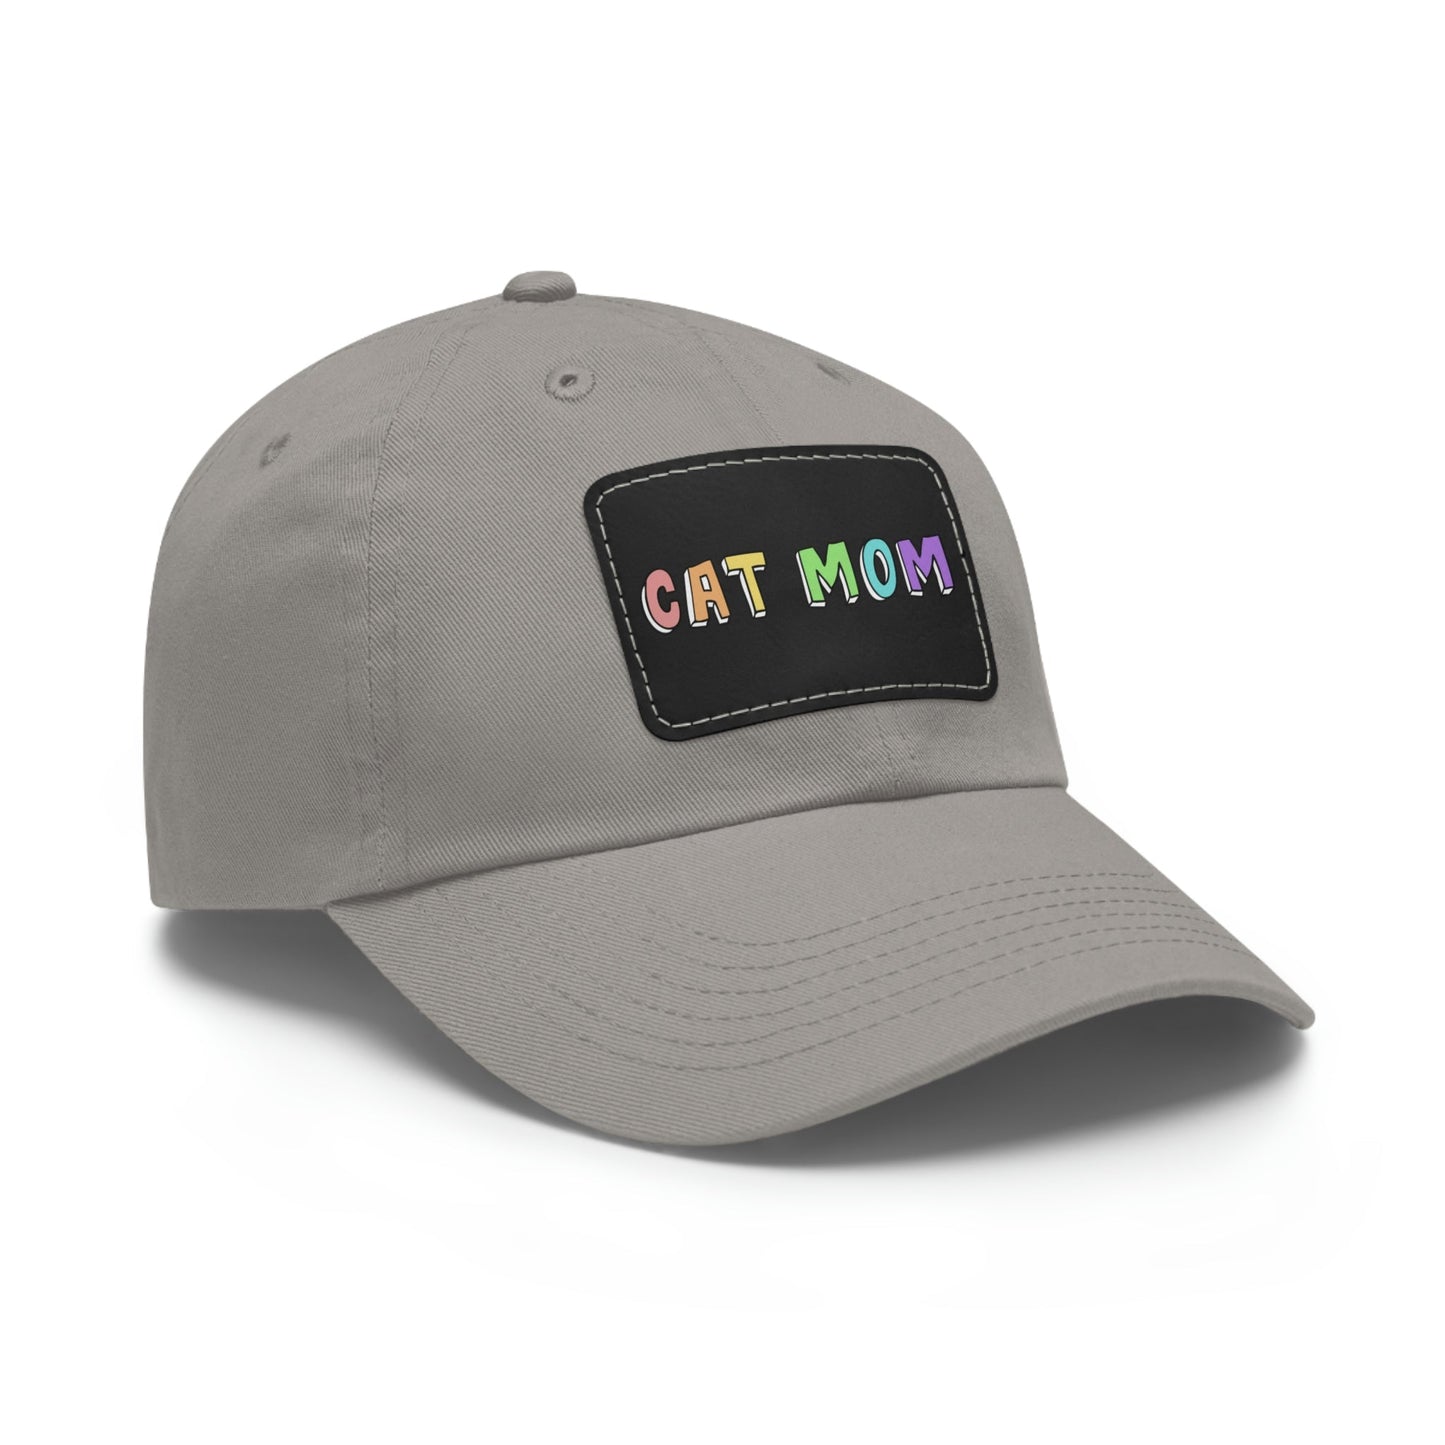 Cat Mom | Dad Hat - Detezi Designs-22167209382086612649